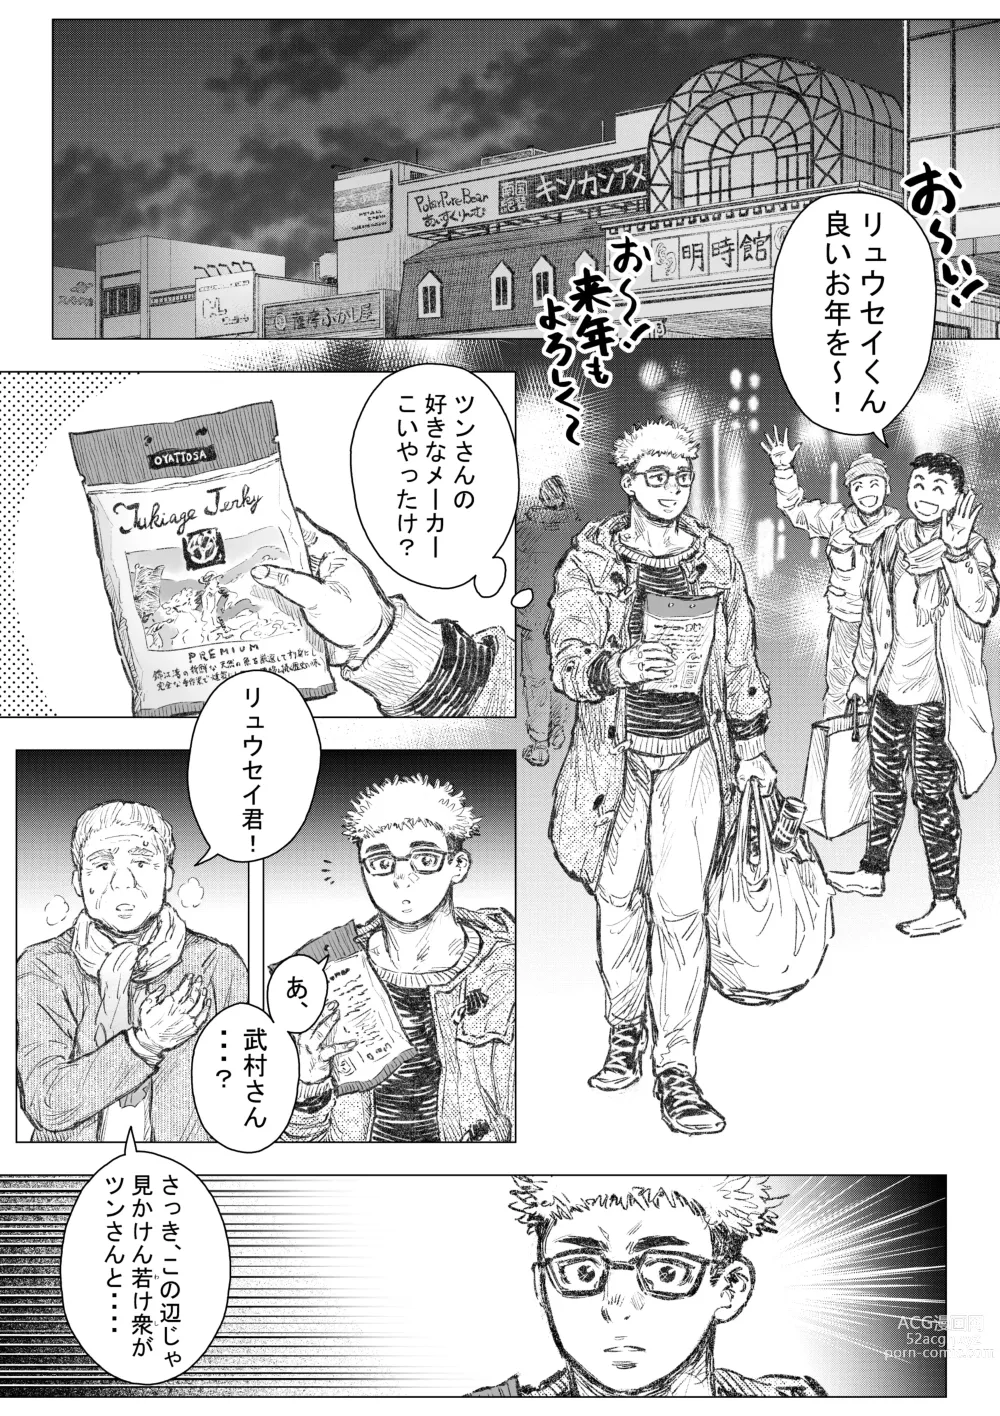 Page 3 of doujinshi Kenkei Tsun Junsa Buchou